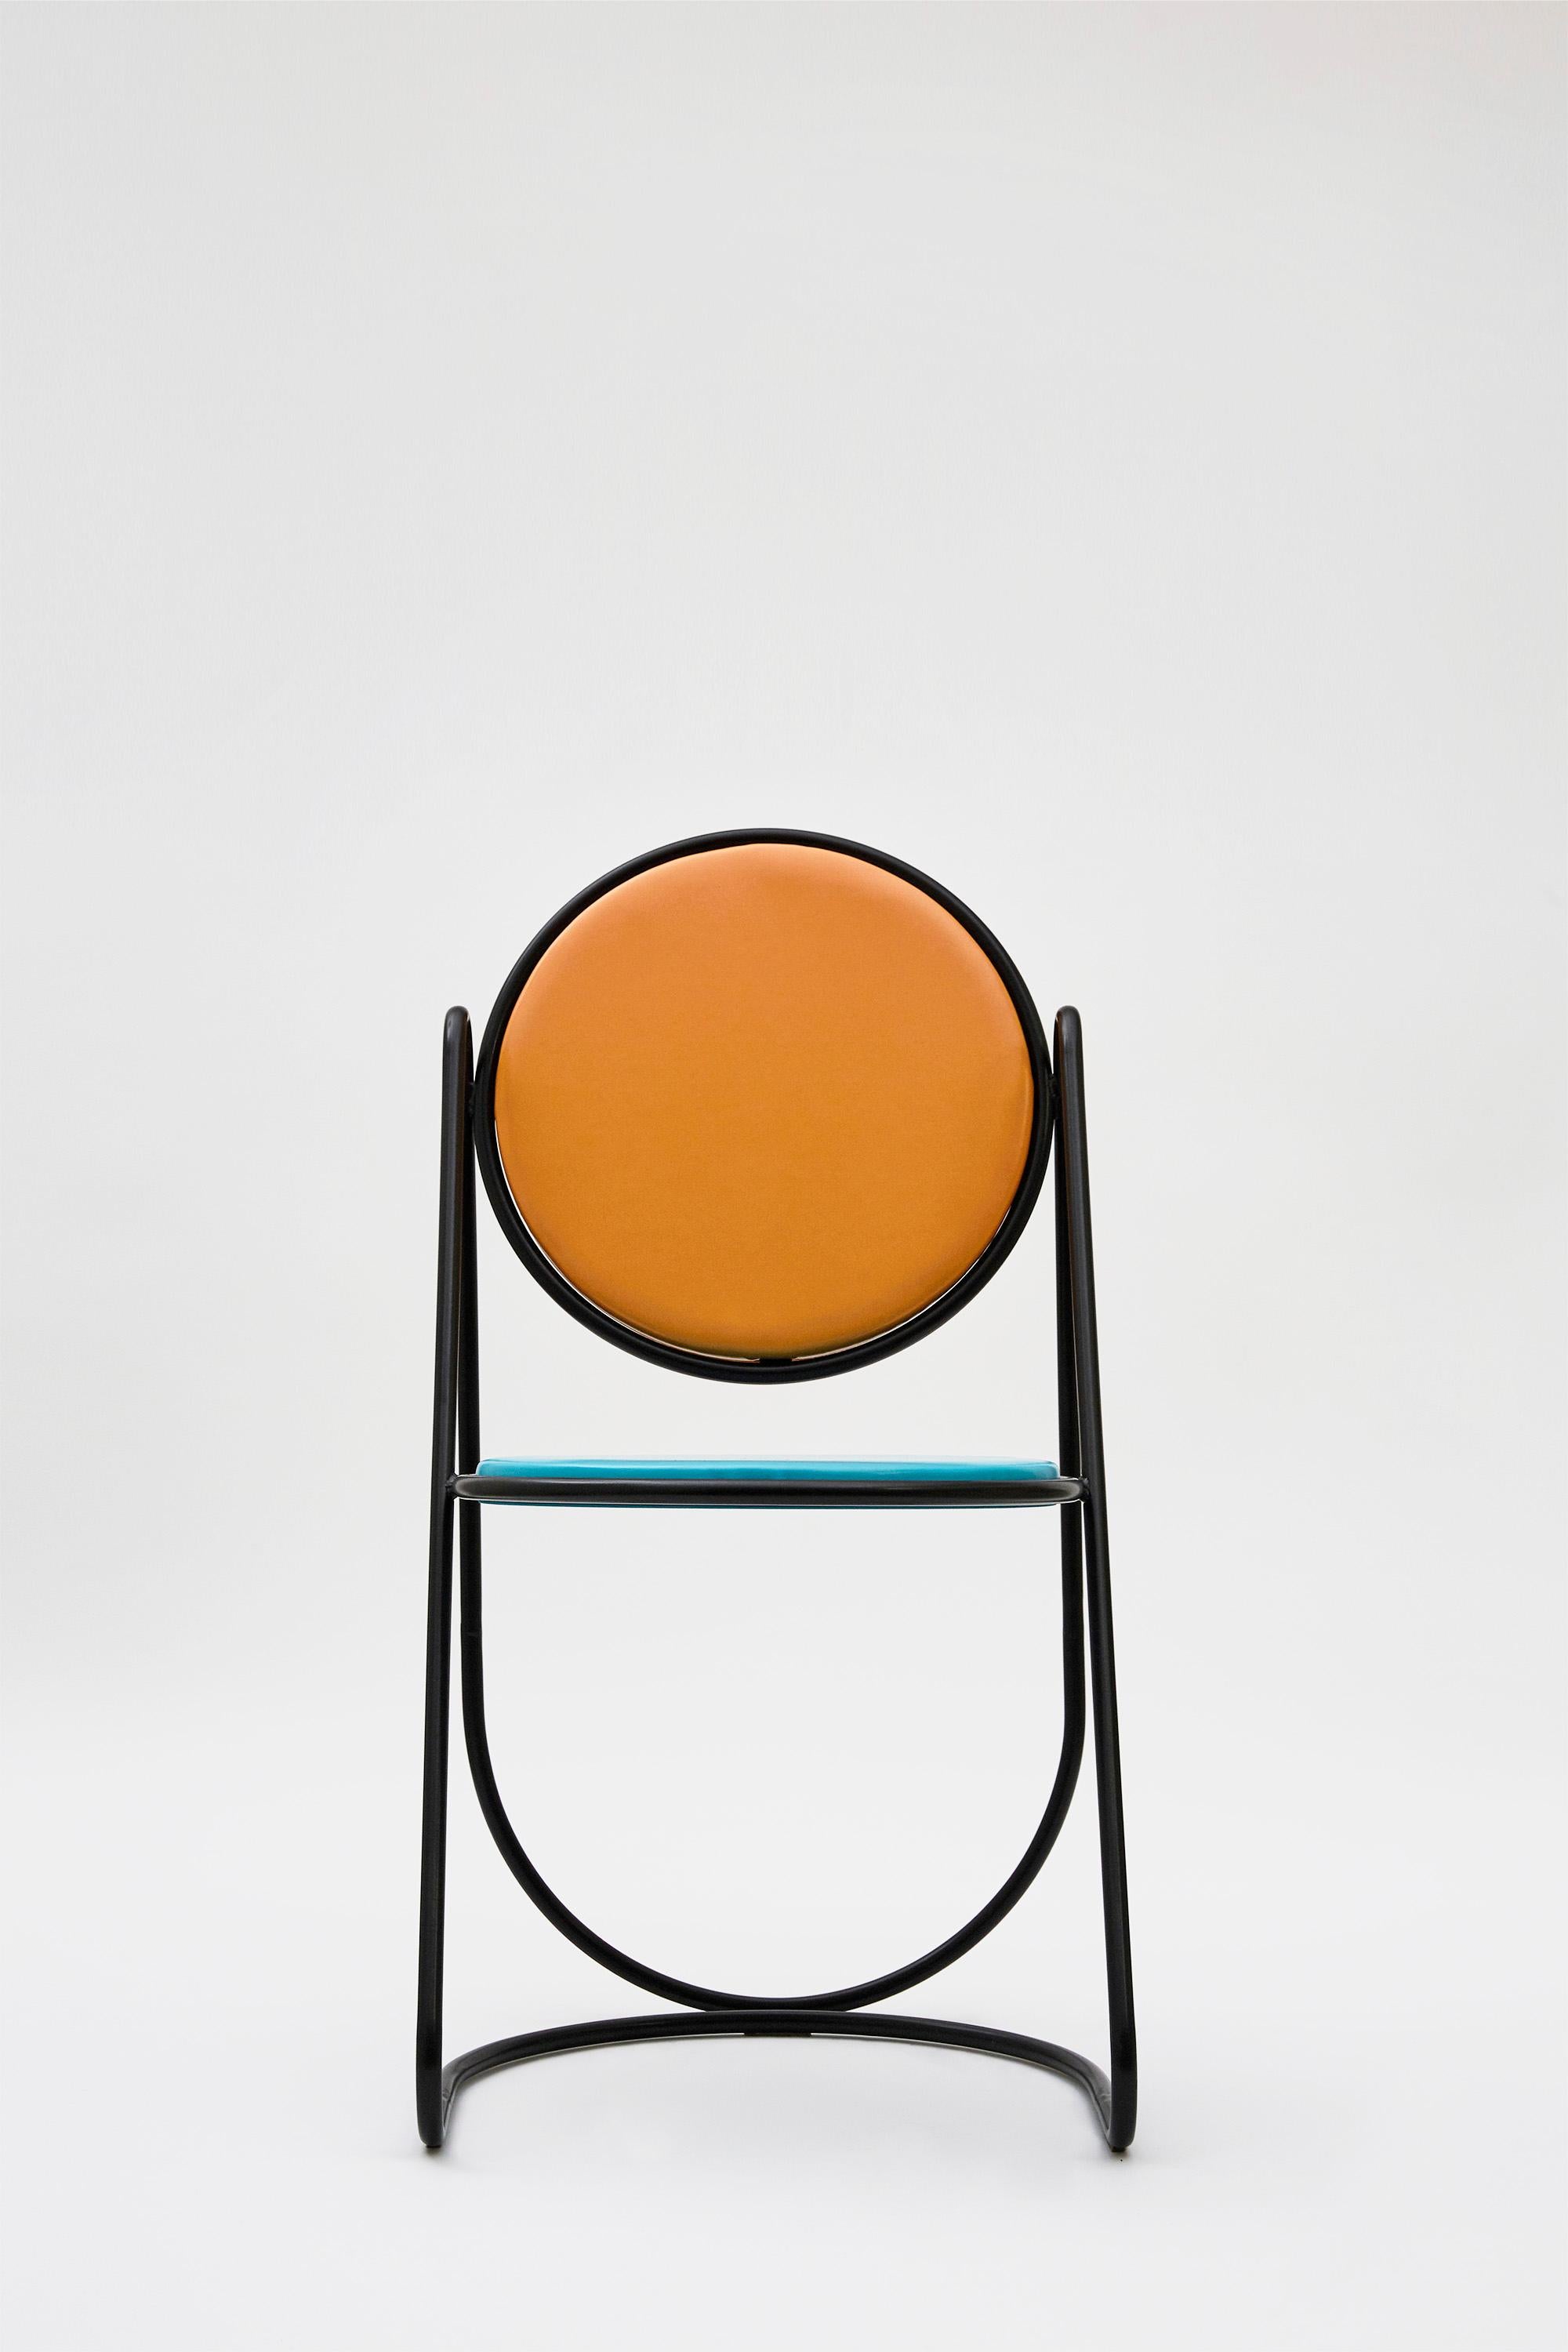 Other U-Disk Chair, Black, Orange & Light Blue For Sale